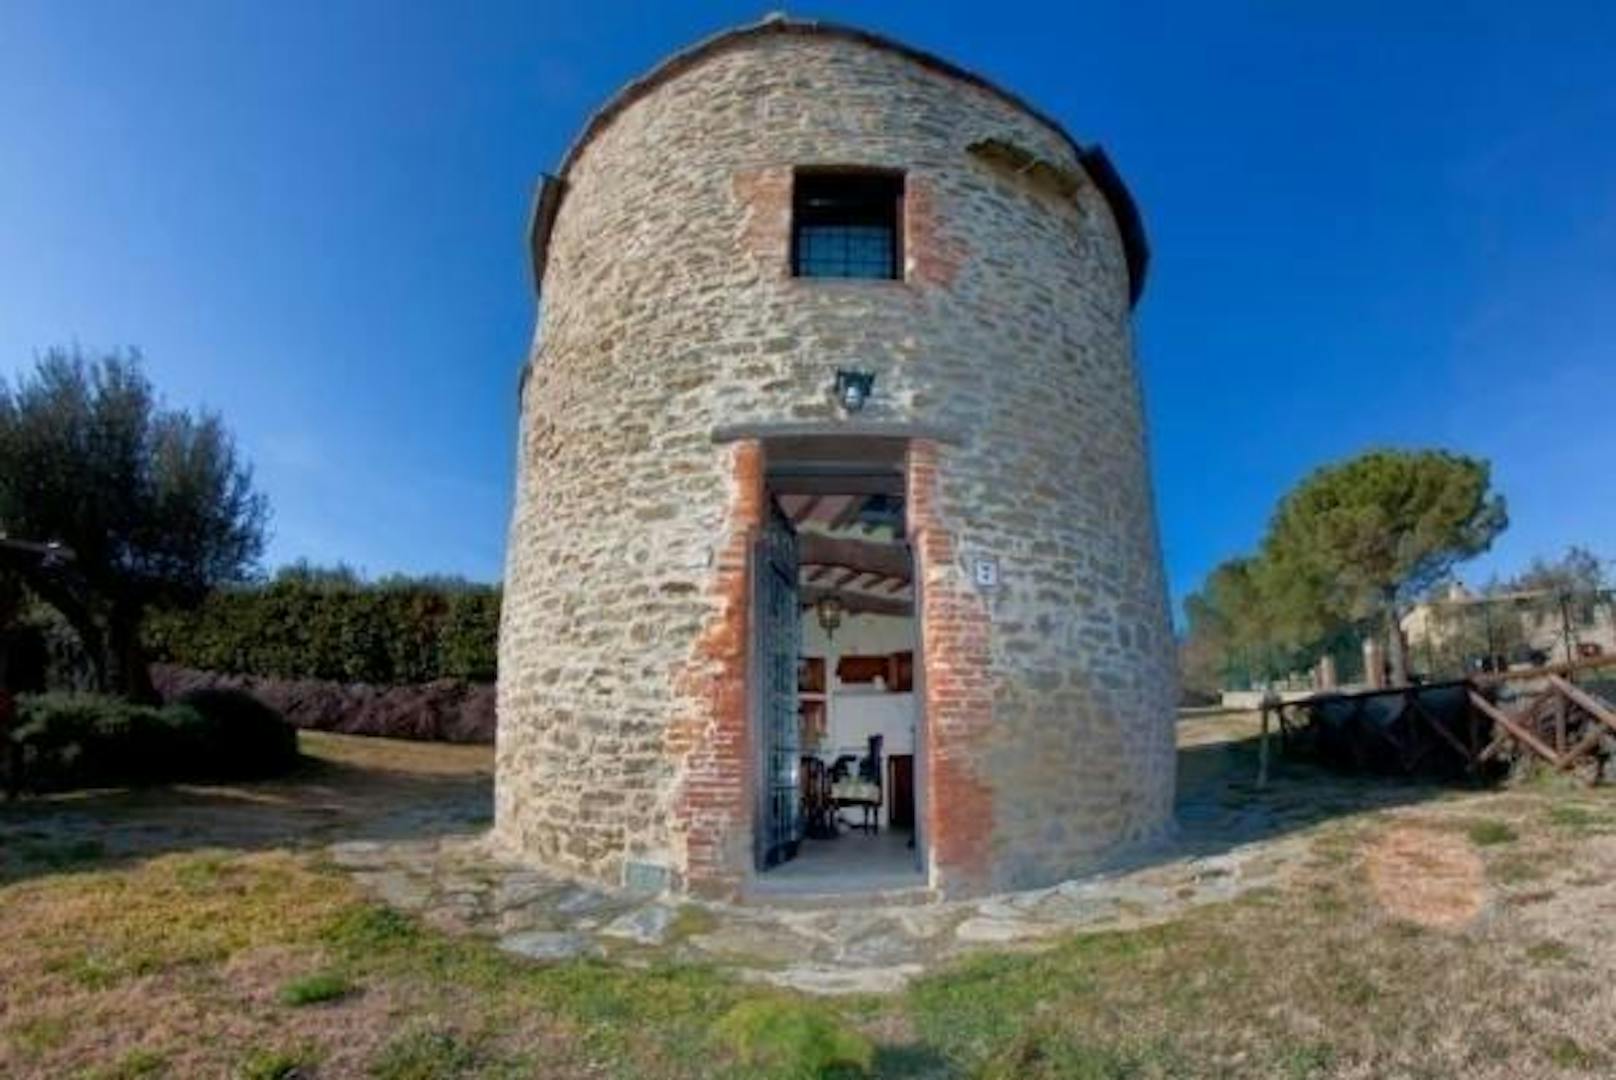 <b>Vecchia Torre, Tuoro sul Trasimeno, Italien</b>
Dieser Turm ist eigentlich kein Schloss, sondern Teil eines alten Landguts. Die Aussicht ist aber jeder Burg würdig.